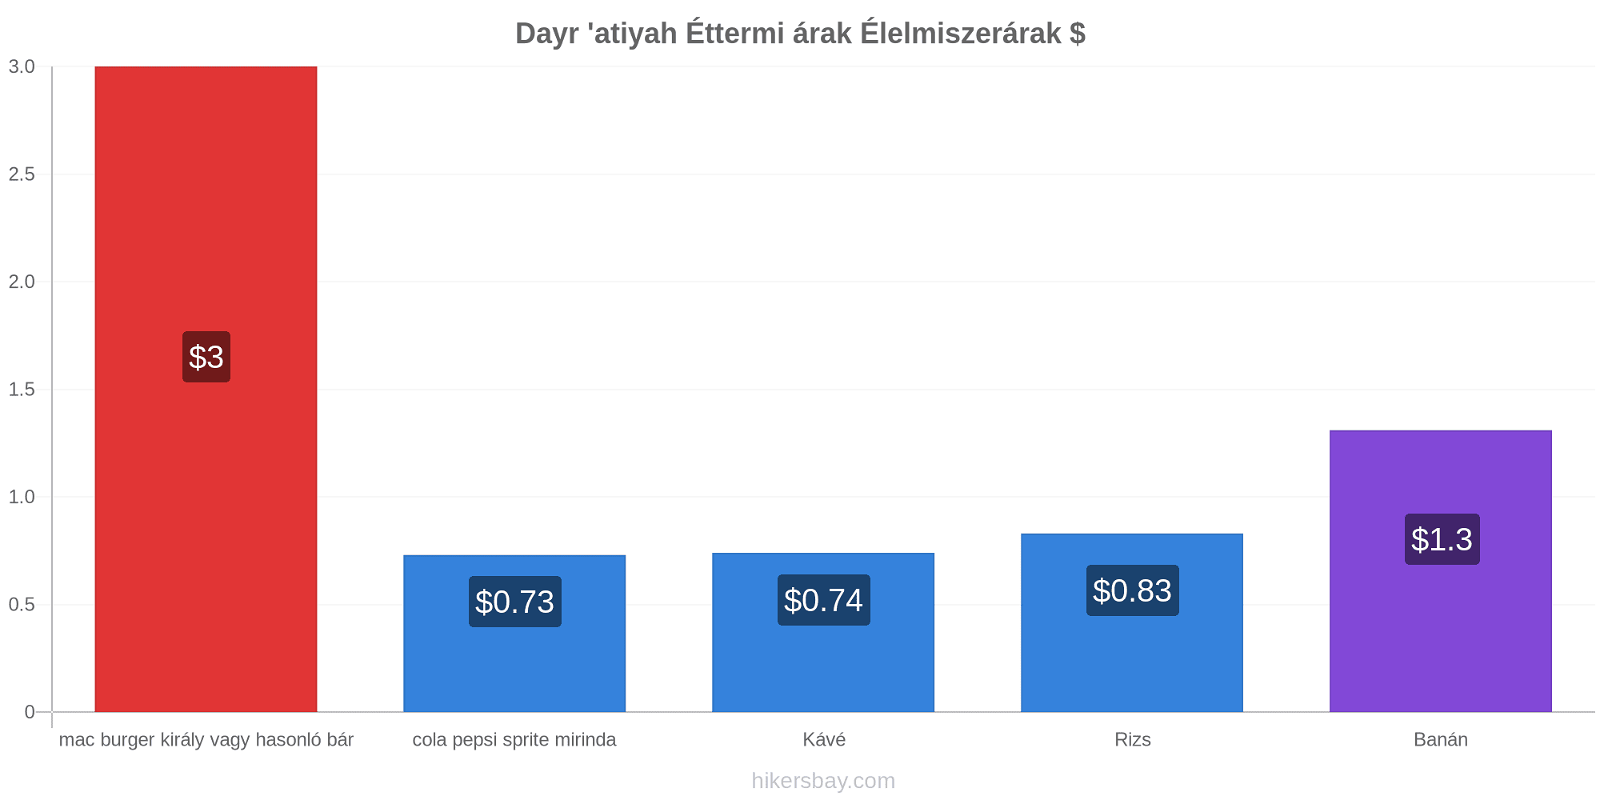 Dayr 'atiyah ár változások hikersbay.com